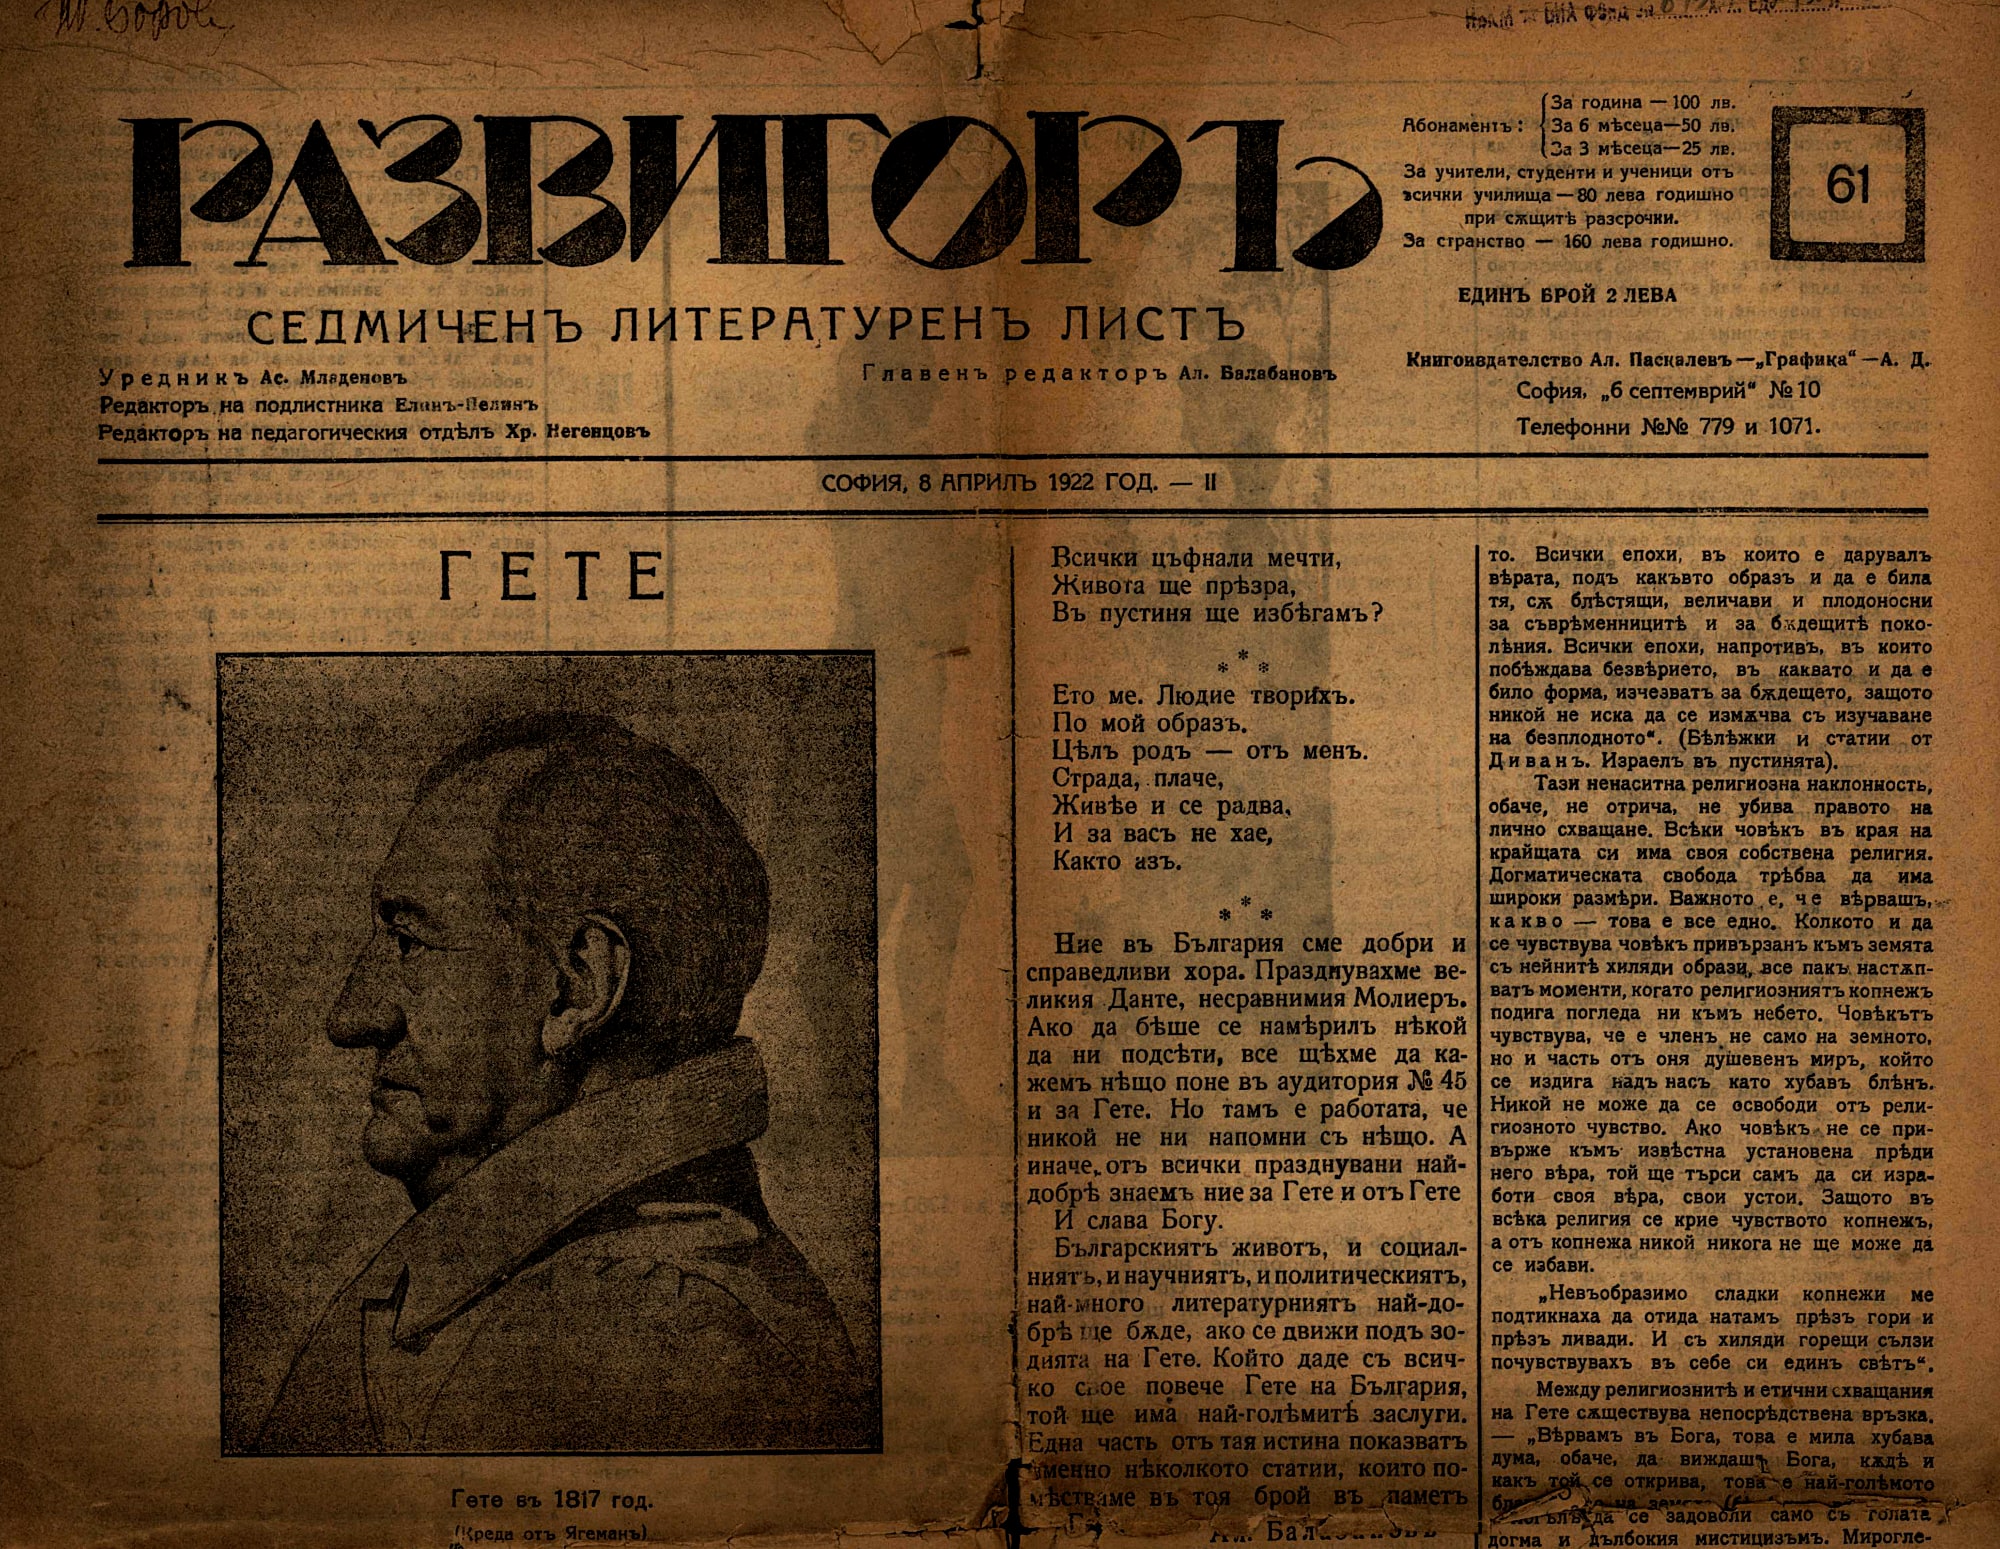 Документи от работата на Тодор Боров като редактор – уредник на в. „Развигор“ (1921 – 1937)